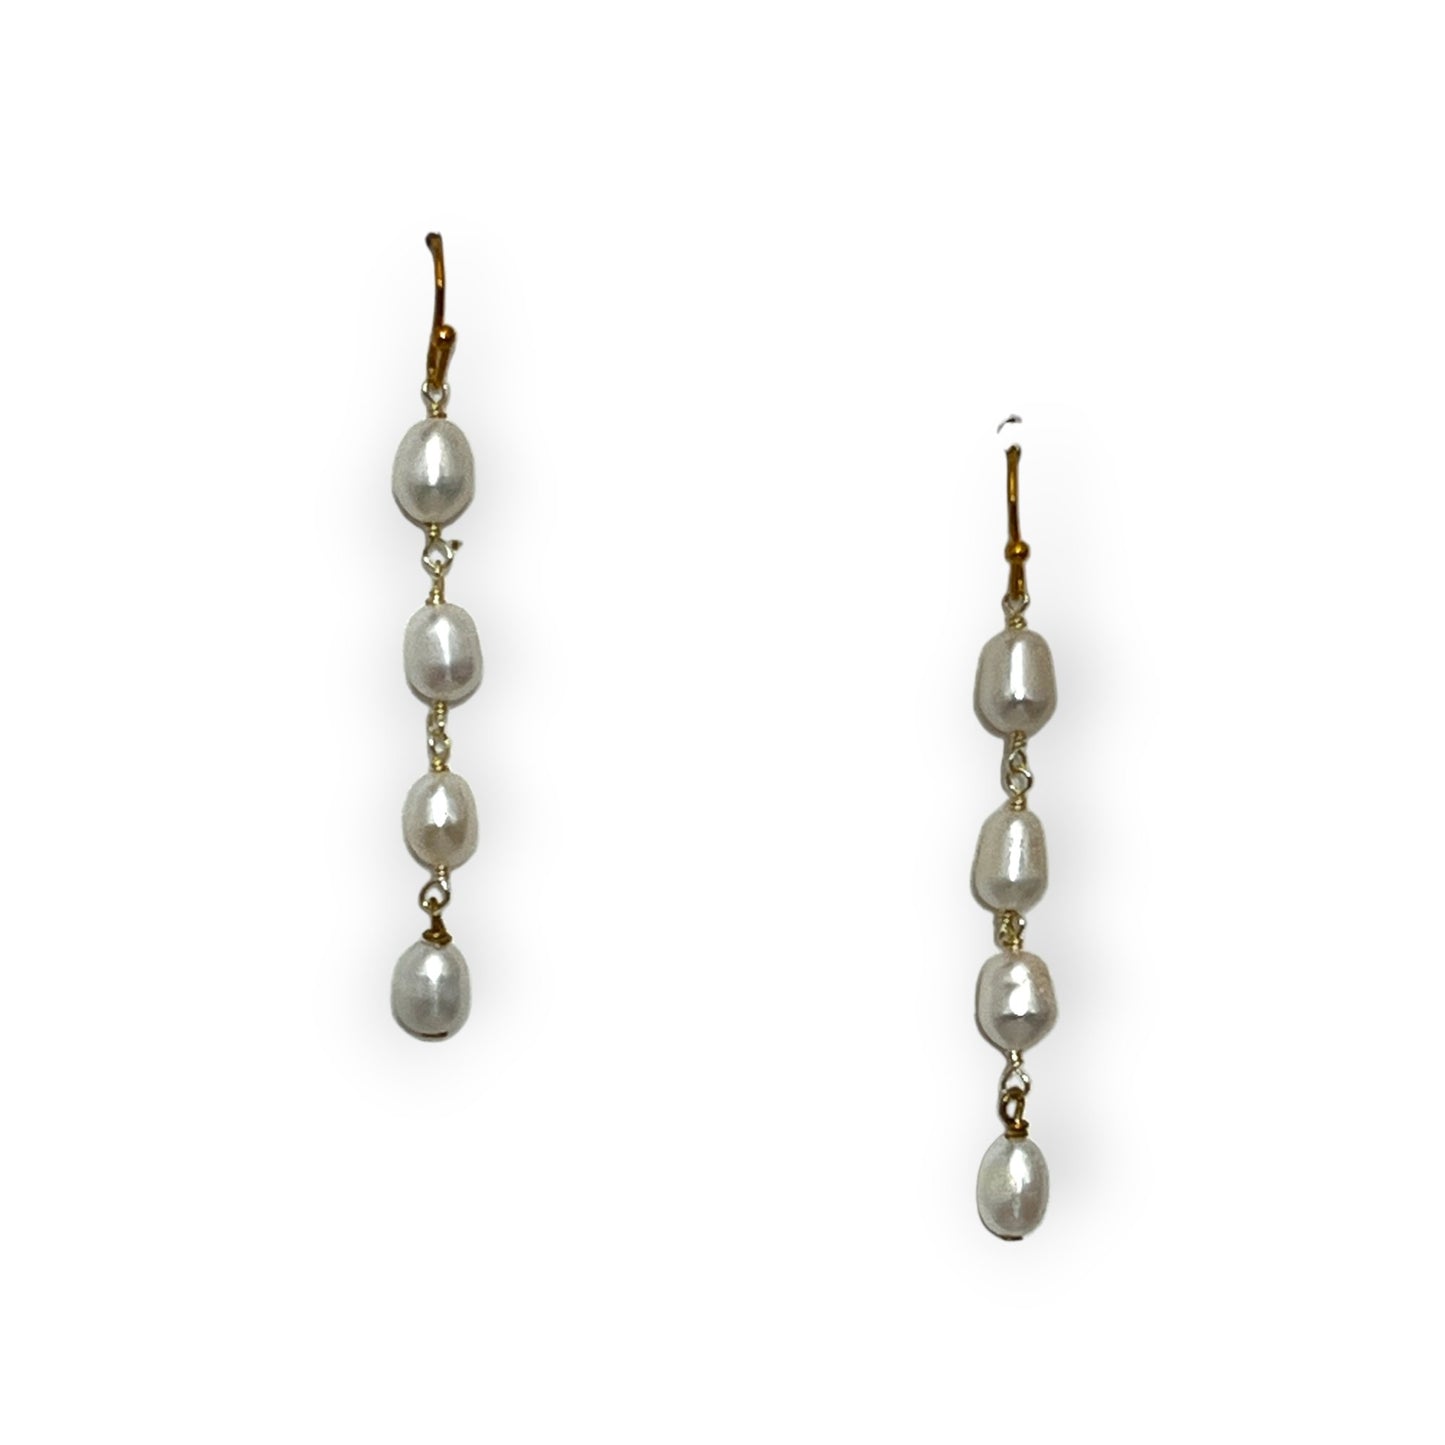 Freshwater pearl string drop earrings - Sundara Joon